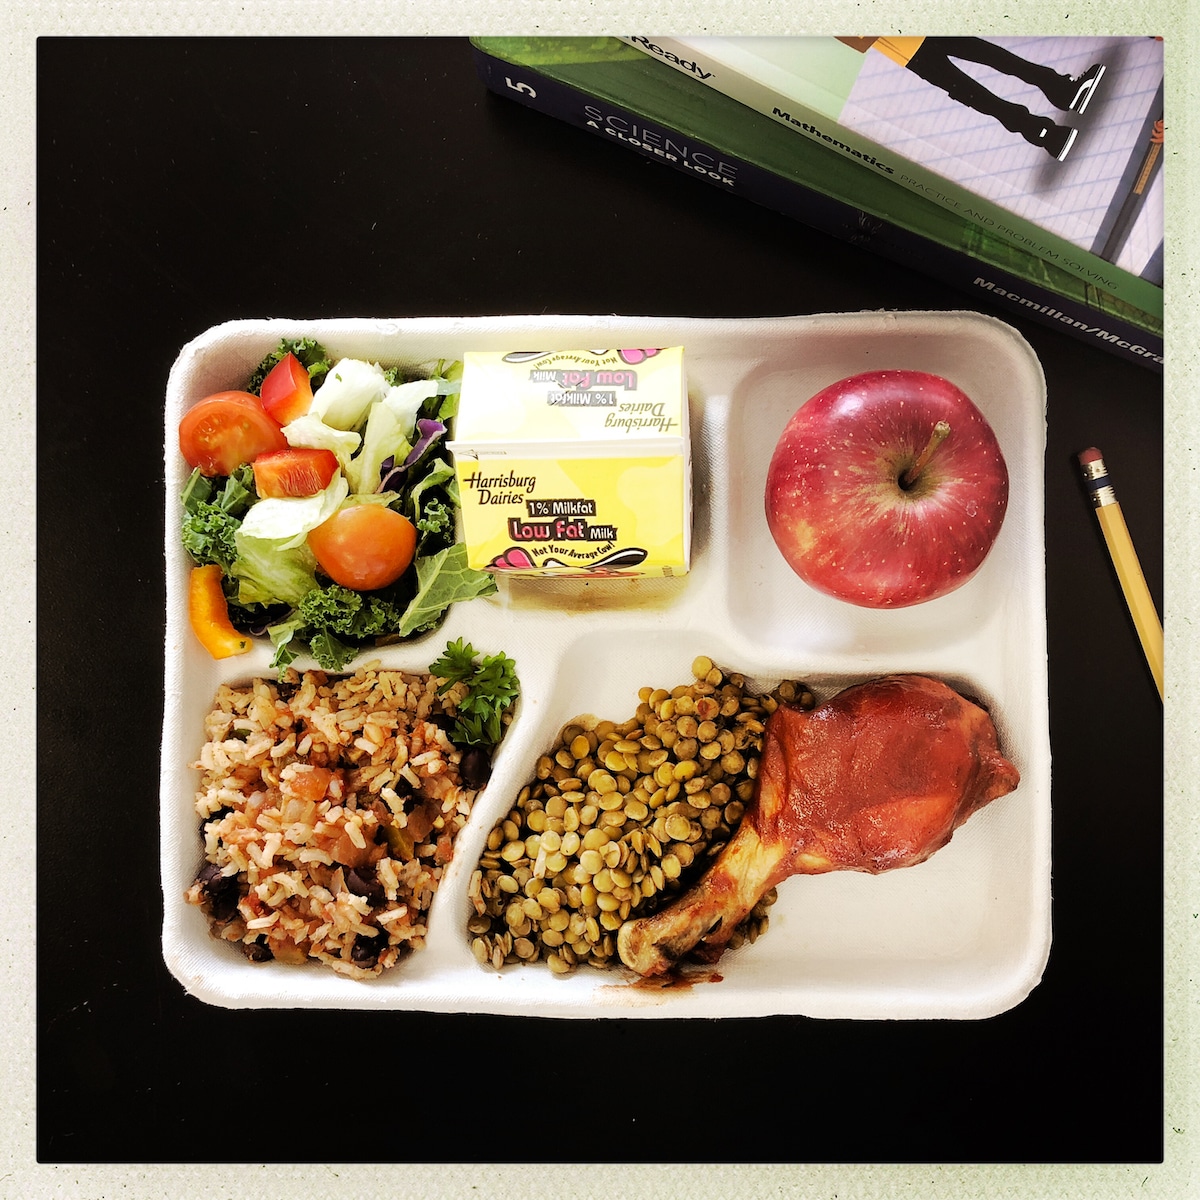 A school lunch at Garfield Elementary School in Washington, DC